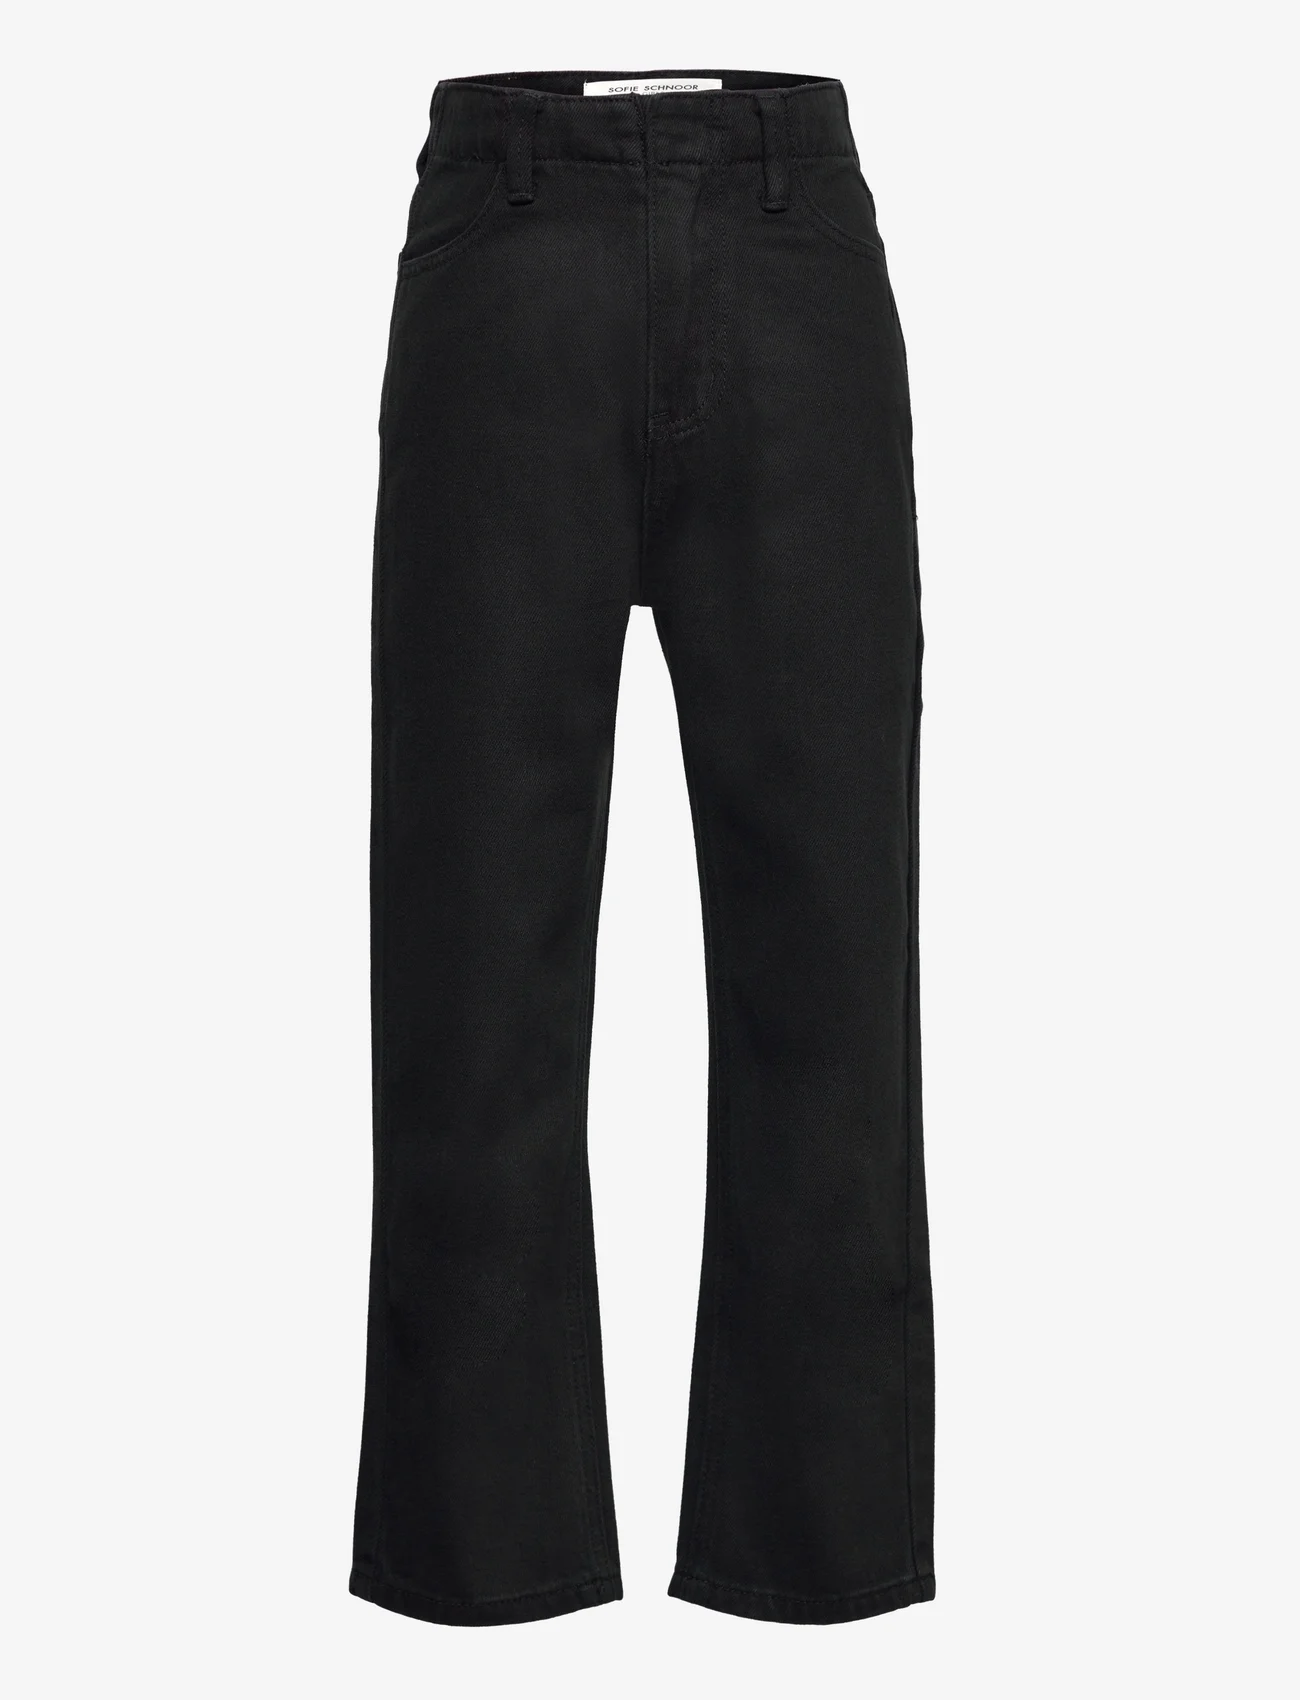 Sofie Schnoor Baby and Kids - G223214 - jeans met wijde pijpen - black - 0